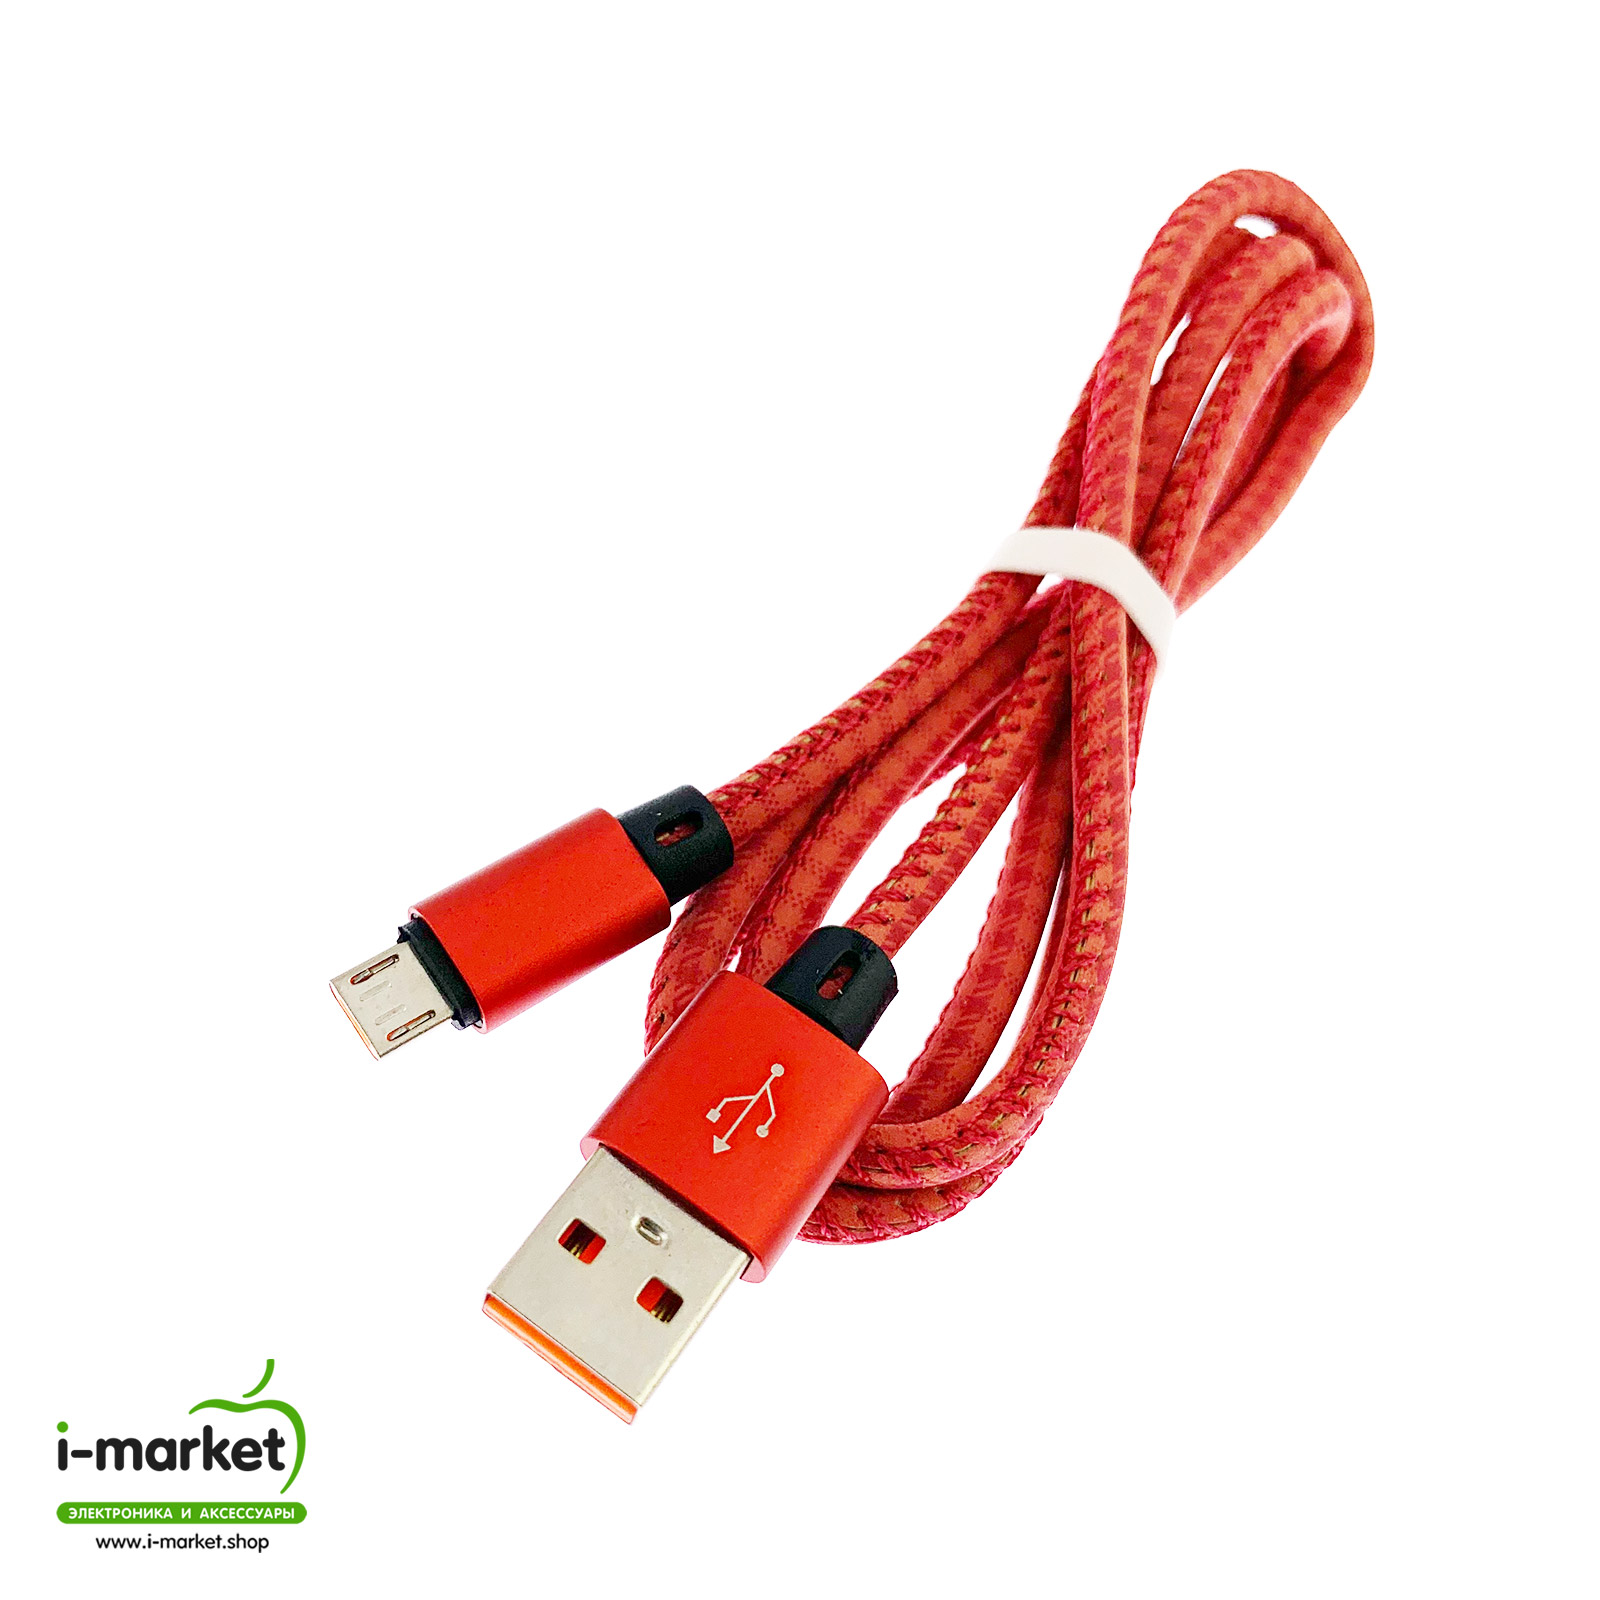 USB Дата кабель A88 для заряда и синхронизации, тип Micro-USB, в армированной под кожу оболочке, длина 1 метр, цвет красный.